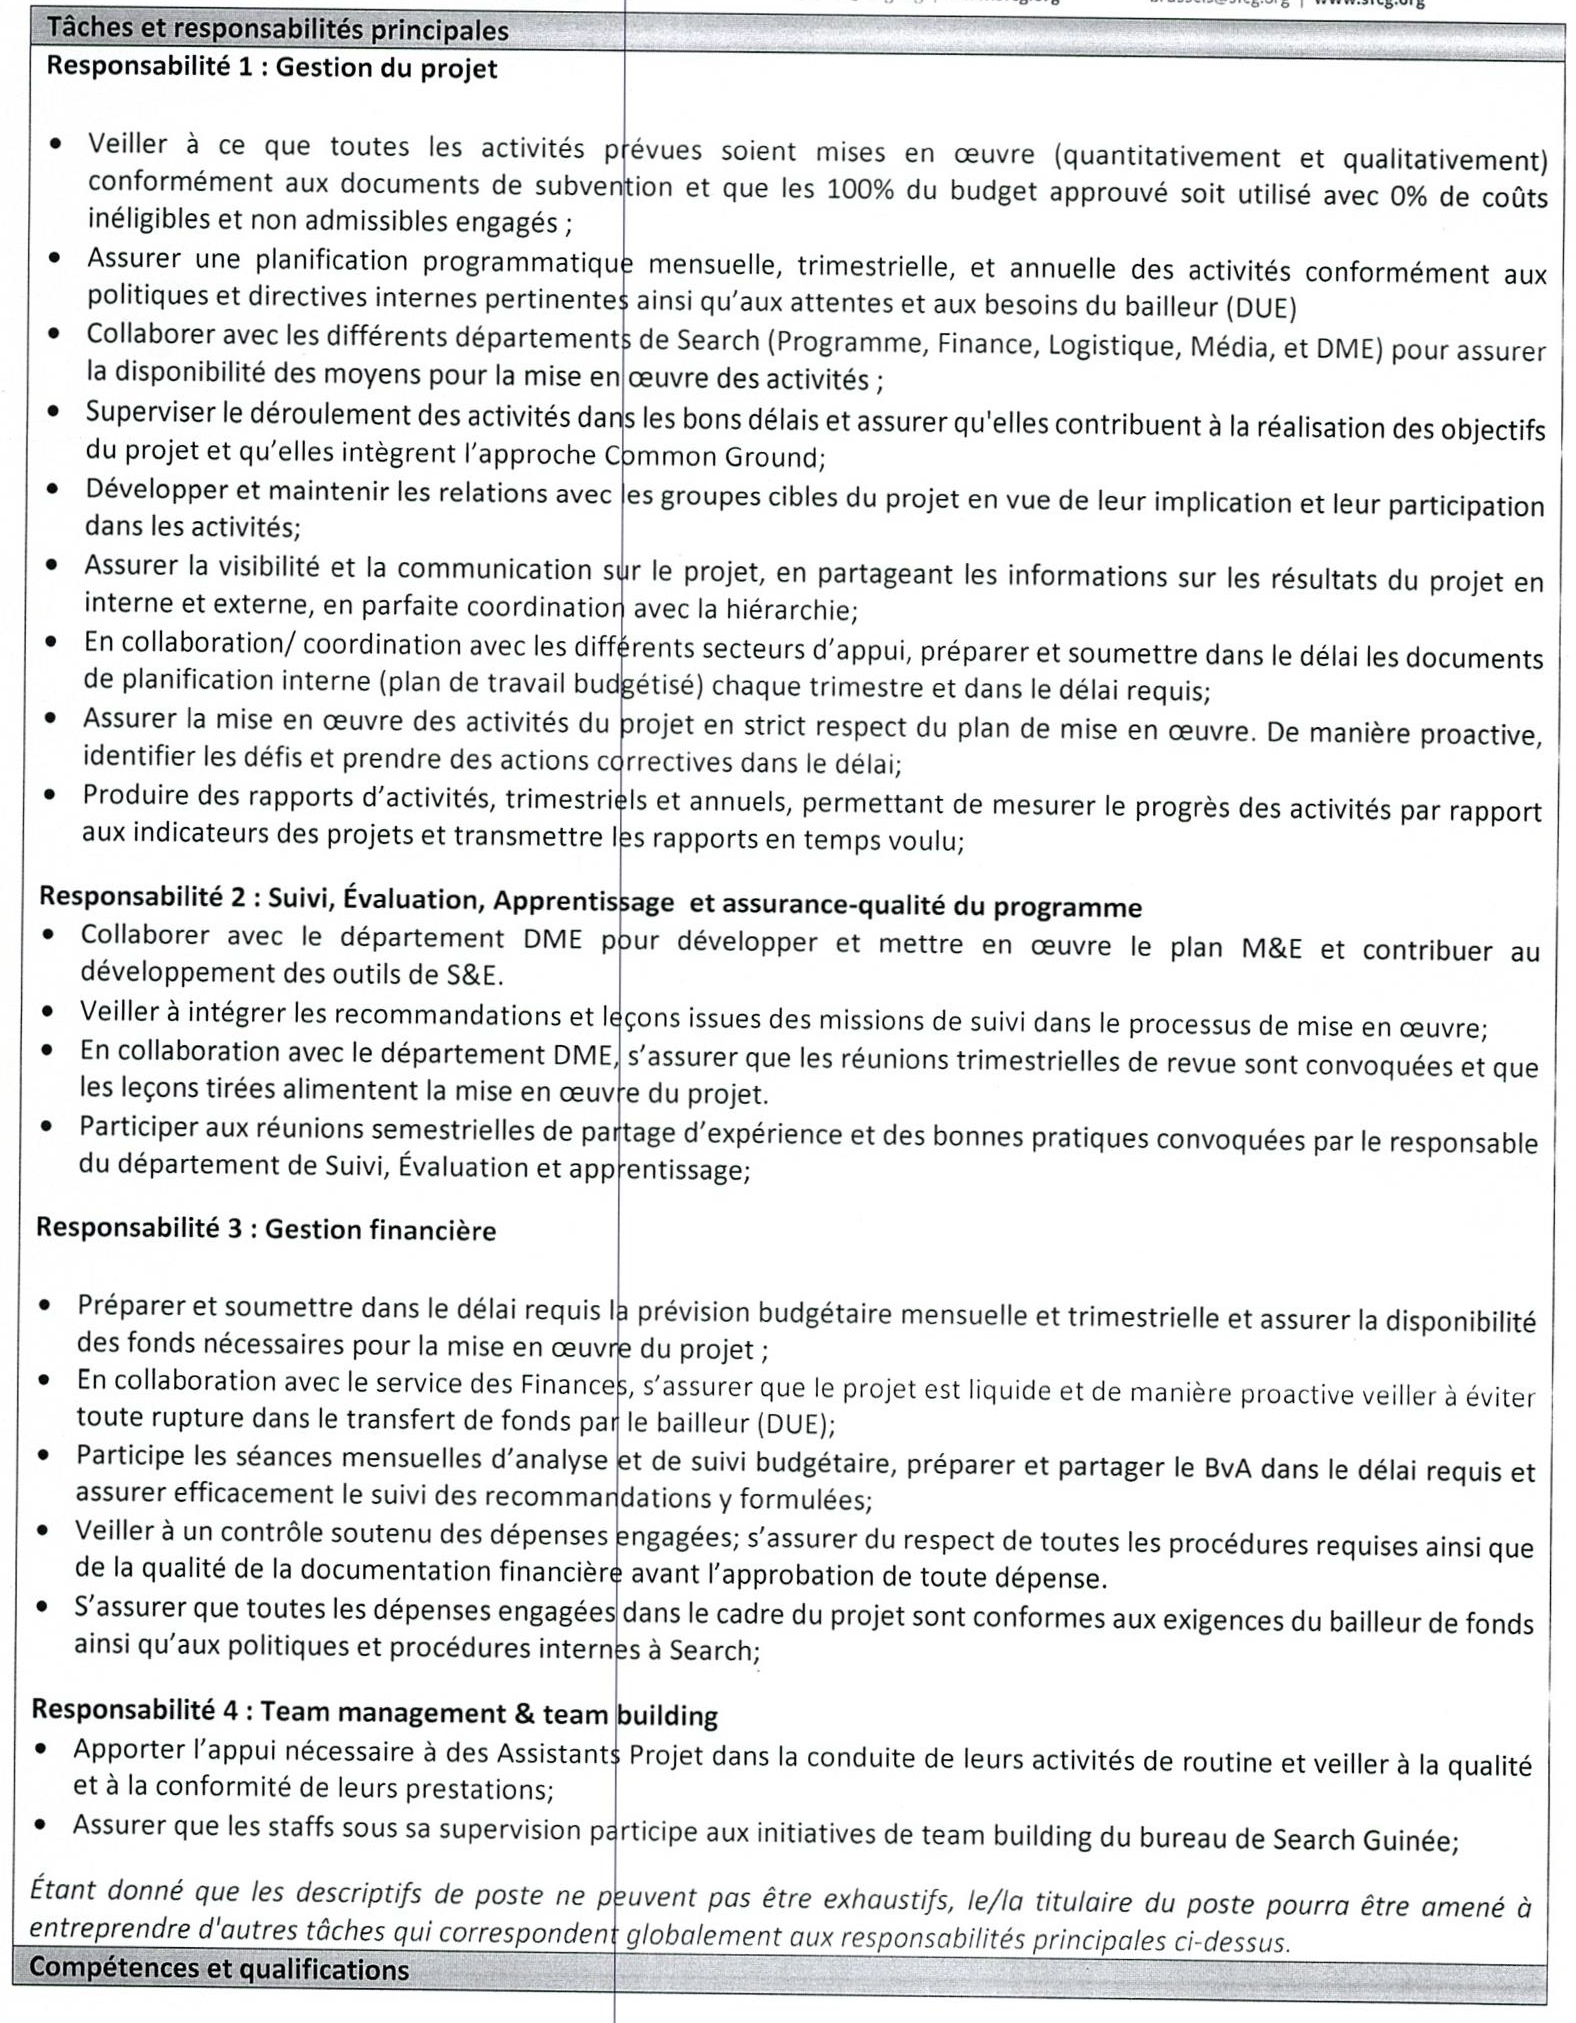 Offre d'emploi et Recrutement par Search For Common Ground Guinée sur Digijob page2